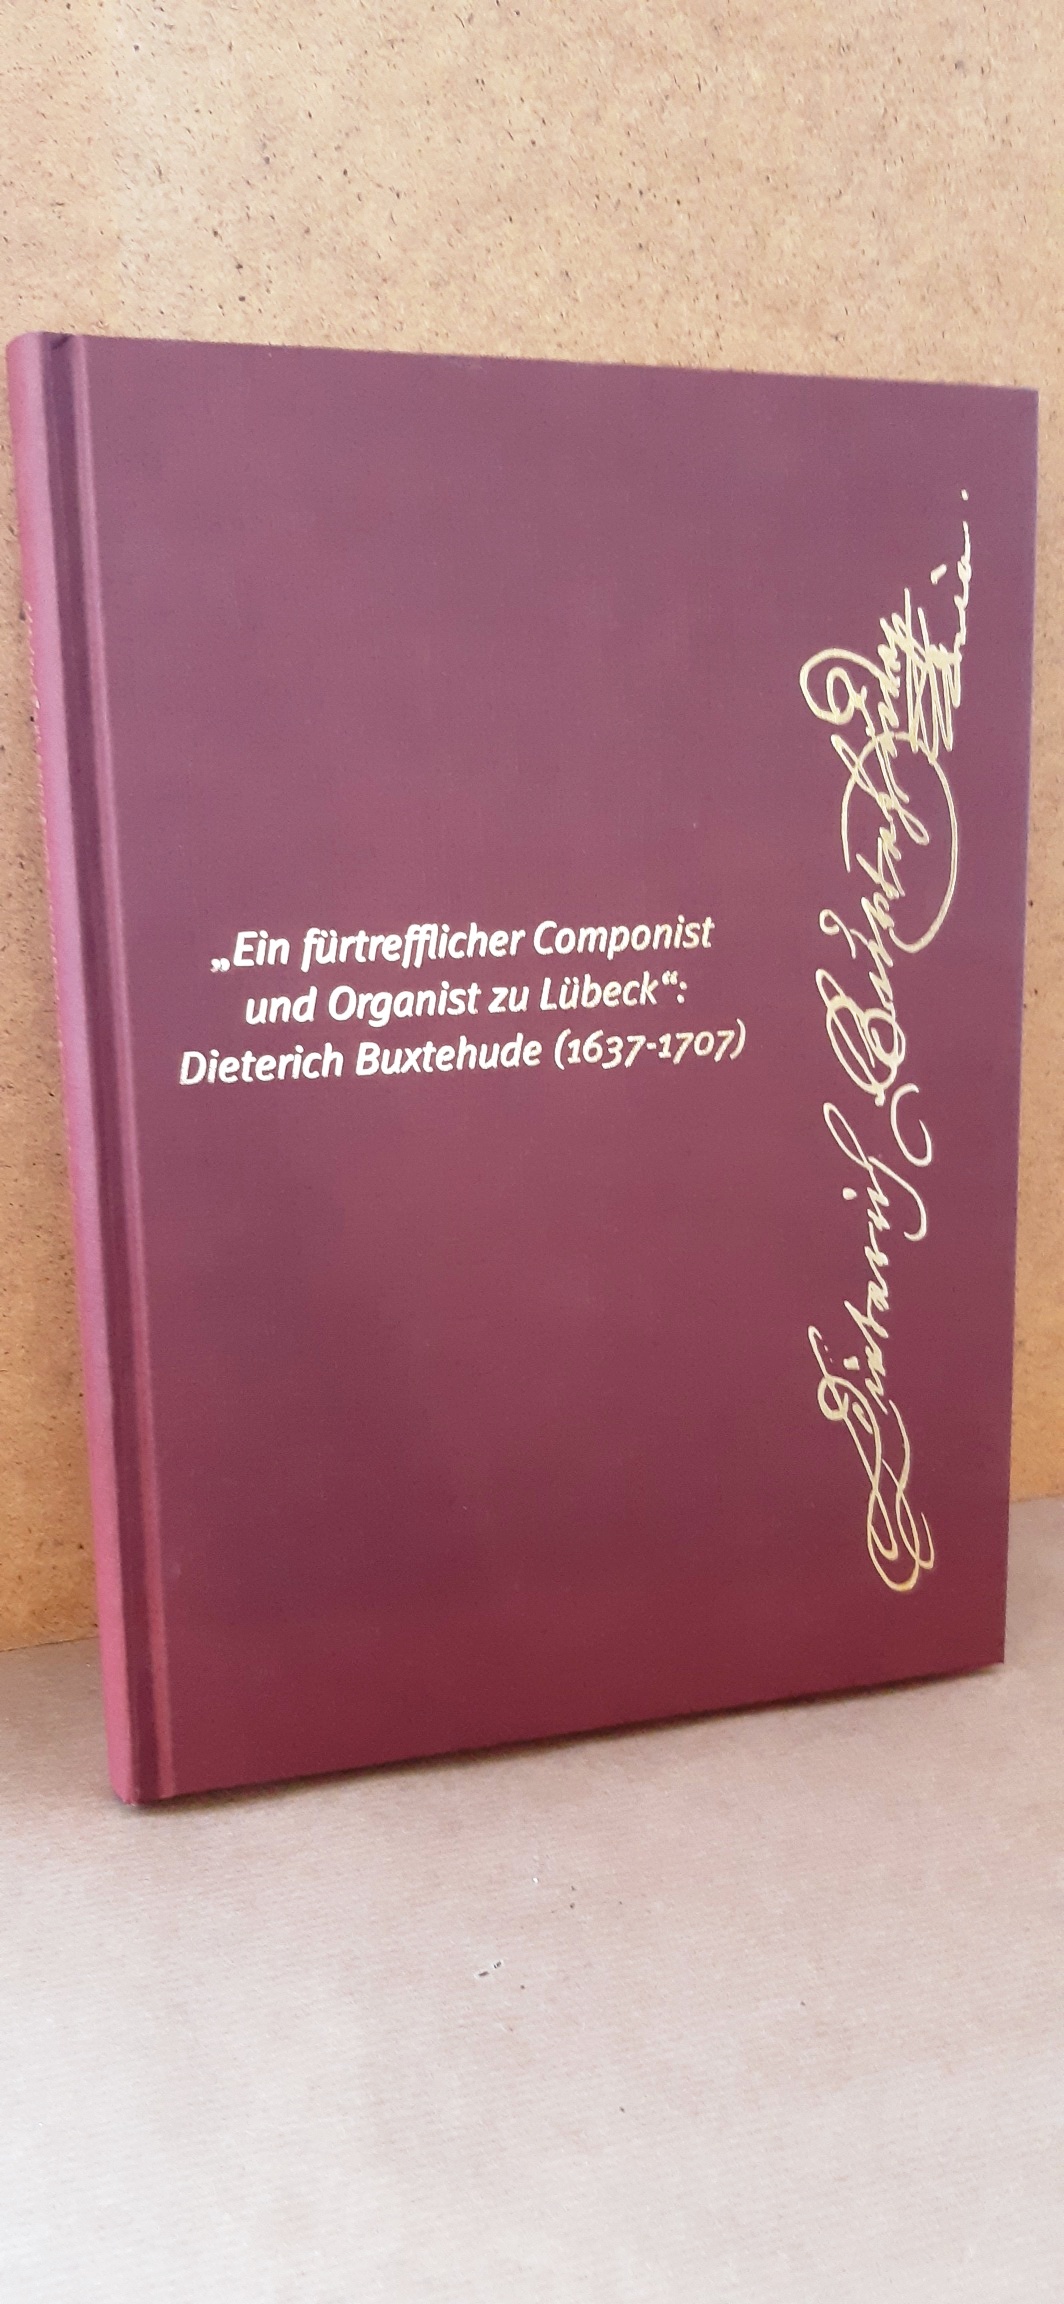 "Ein fürtrefflicher Componist und Organist zu Lübeck" Dietrich Buxtehude (1637-1707)